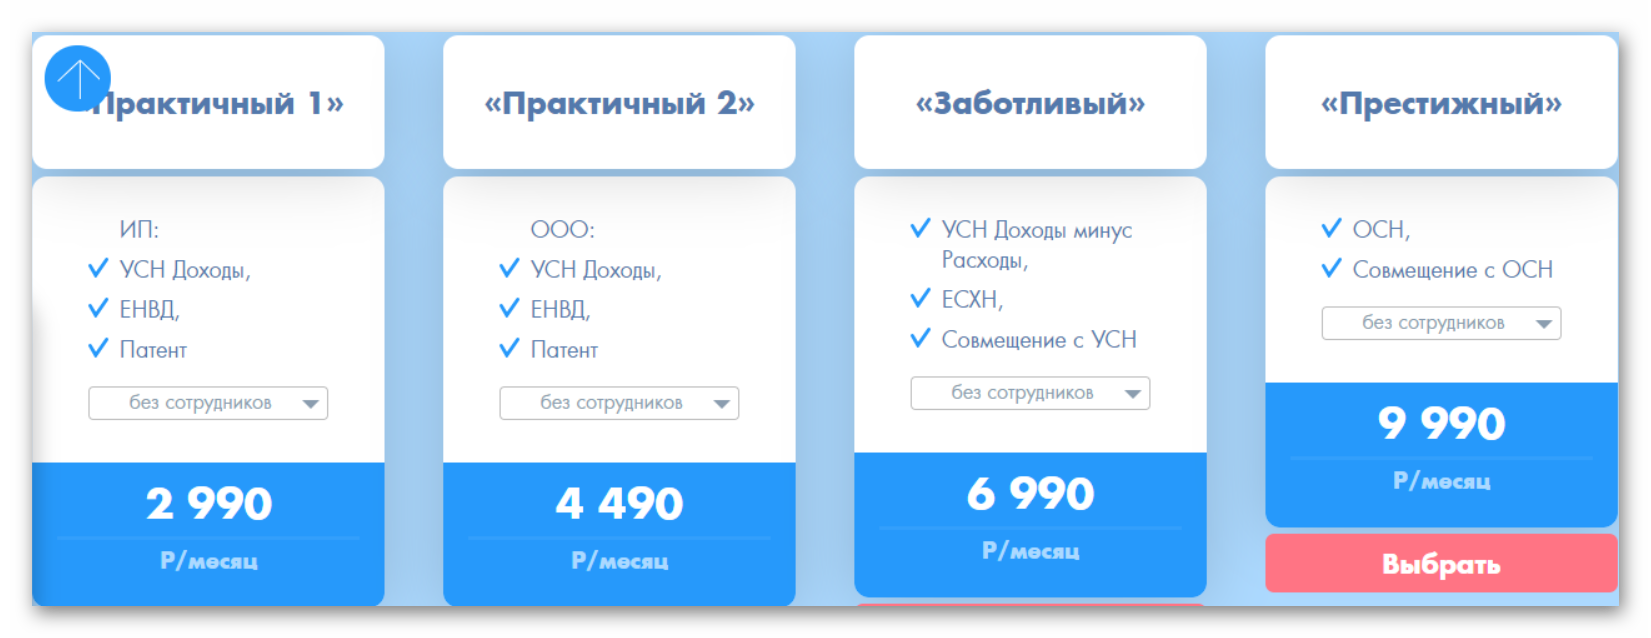 Тарифы на бухгалтерский аутсорсинг начинаются от 2 990 рублей в месяц. Если поискать, можно найти дешевле